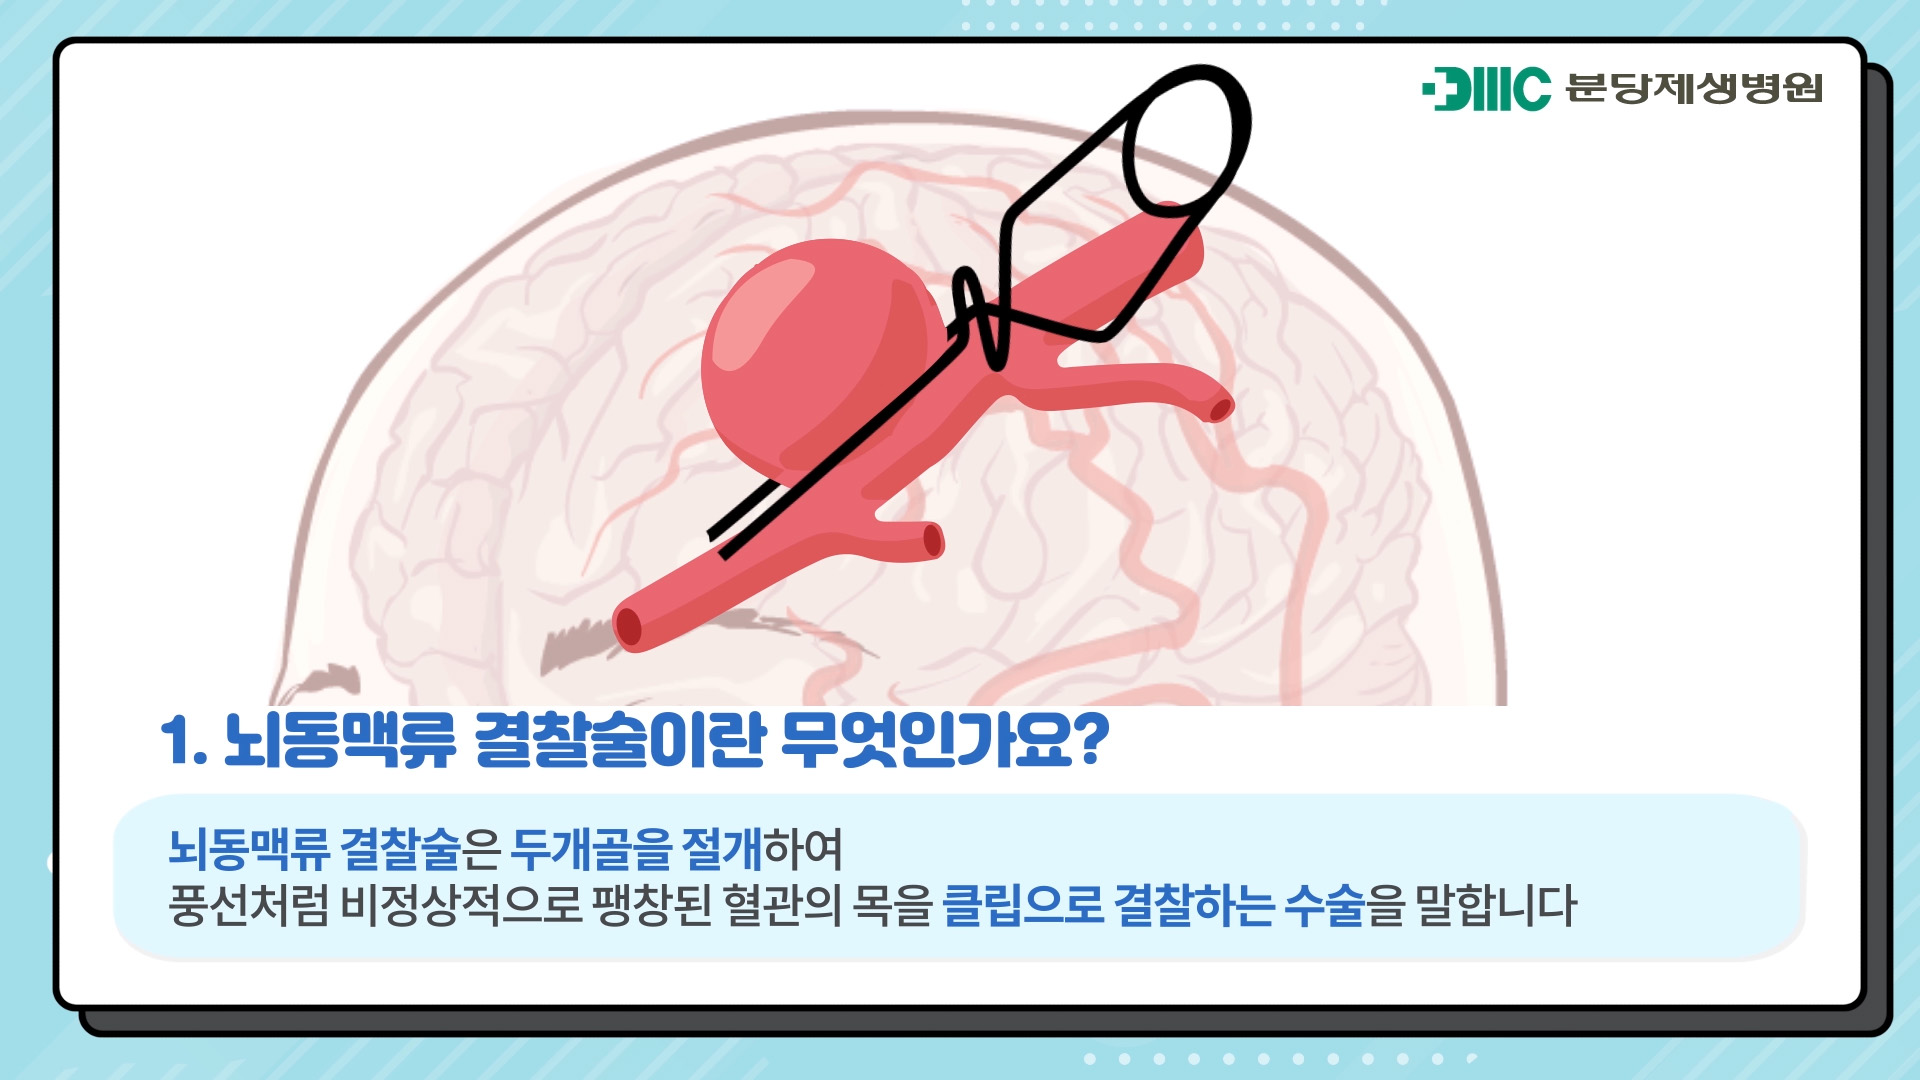 뇌동맥류 결찰술이란 무엇인가요?